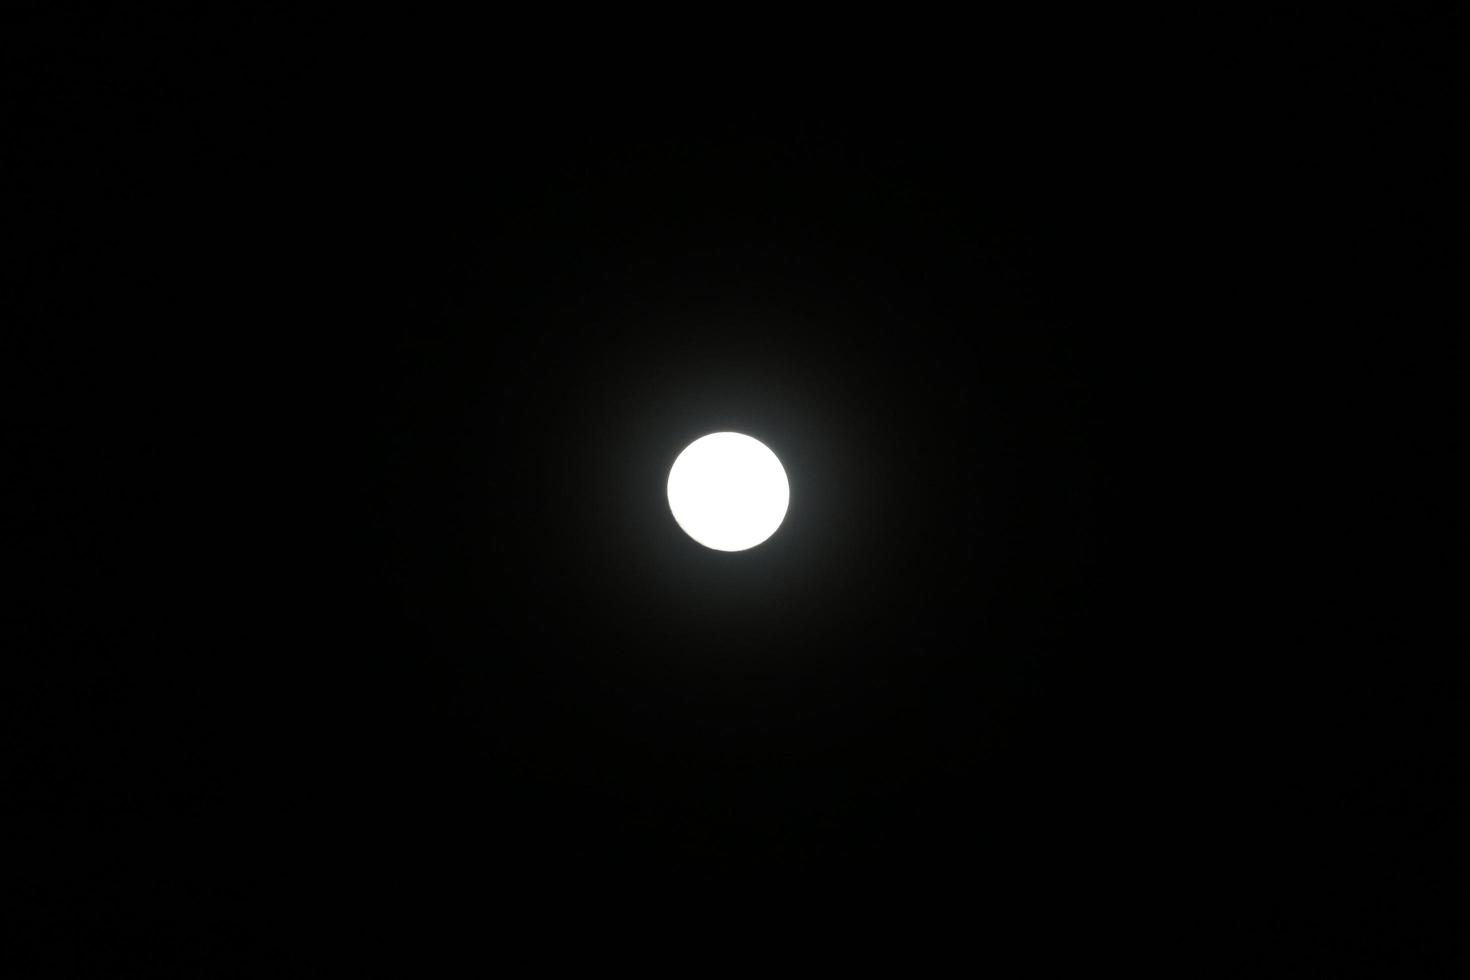 Full Moon at night. White round shape on black background. photo